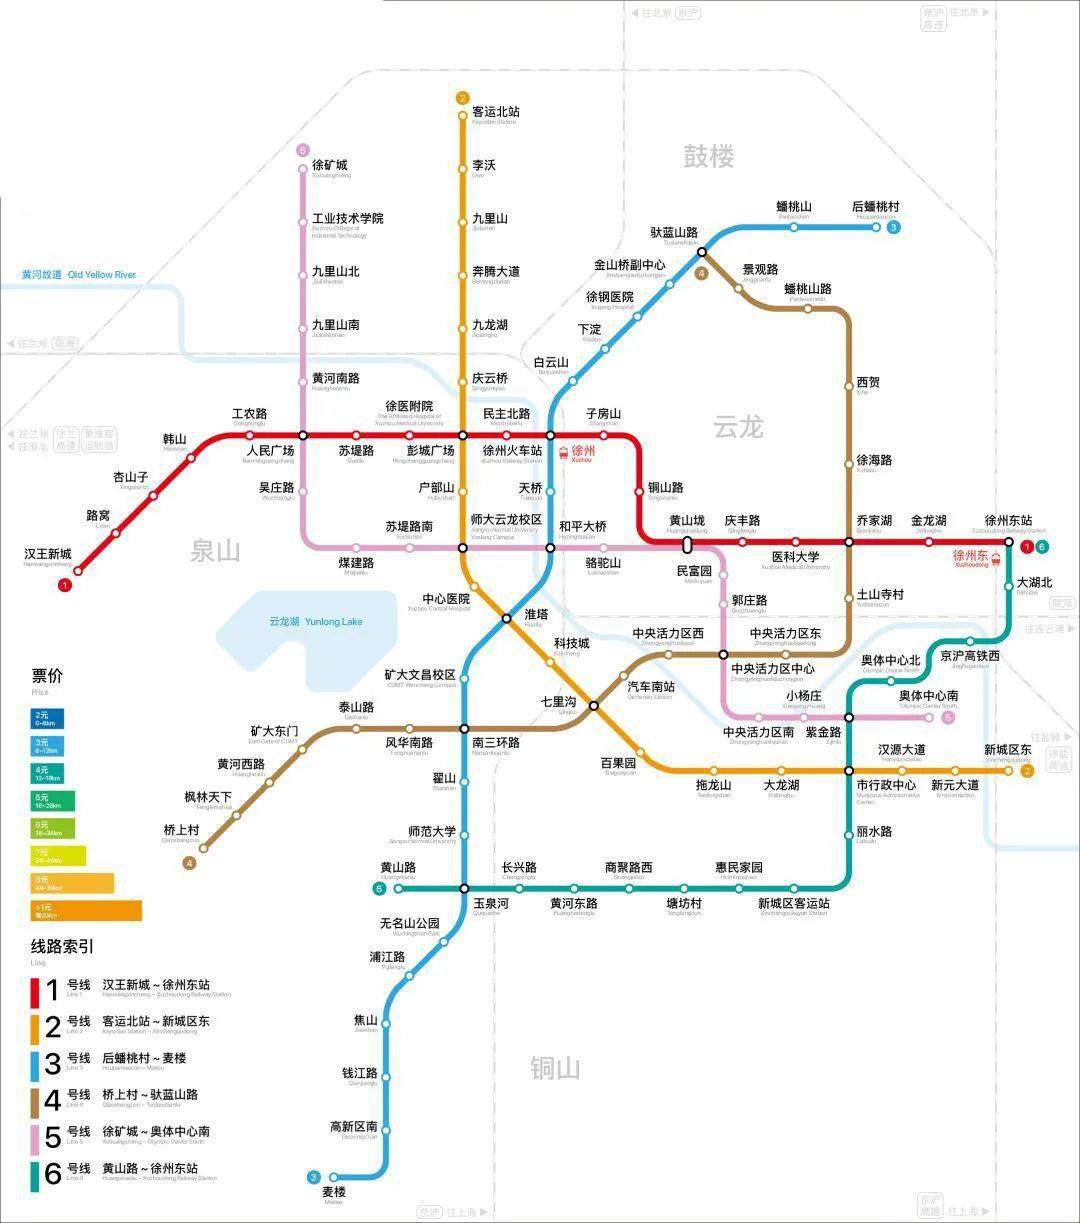 徐州地铁2号线一期已经进入开通倒计时 徐州地铁2号线一期工程为一条